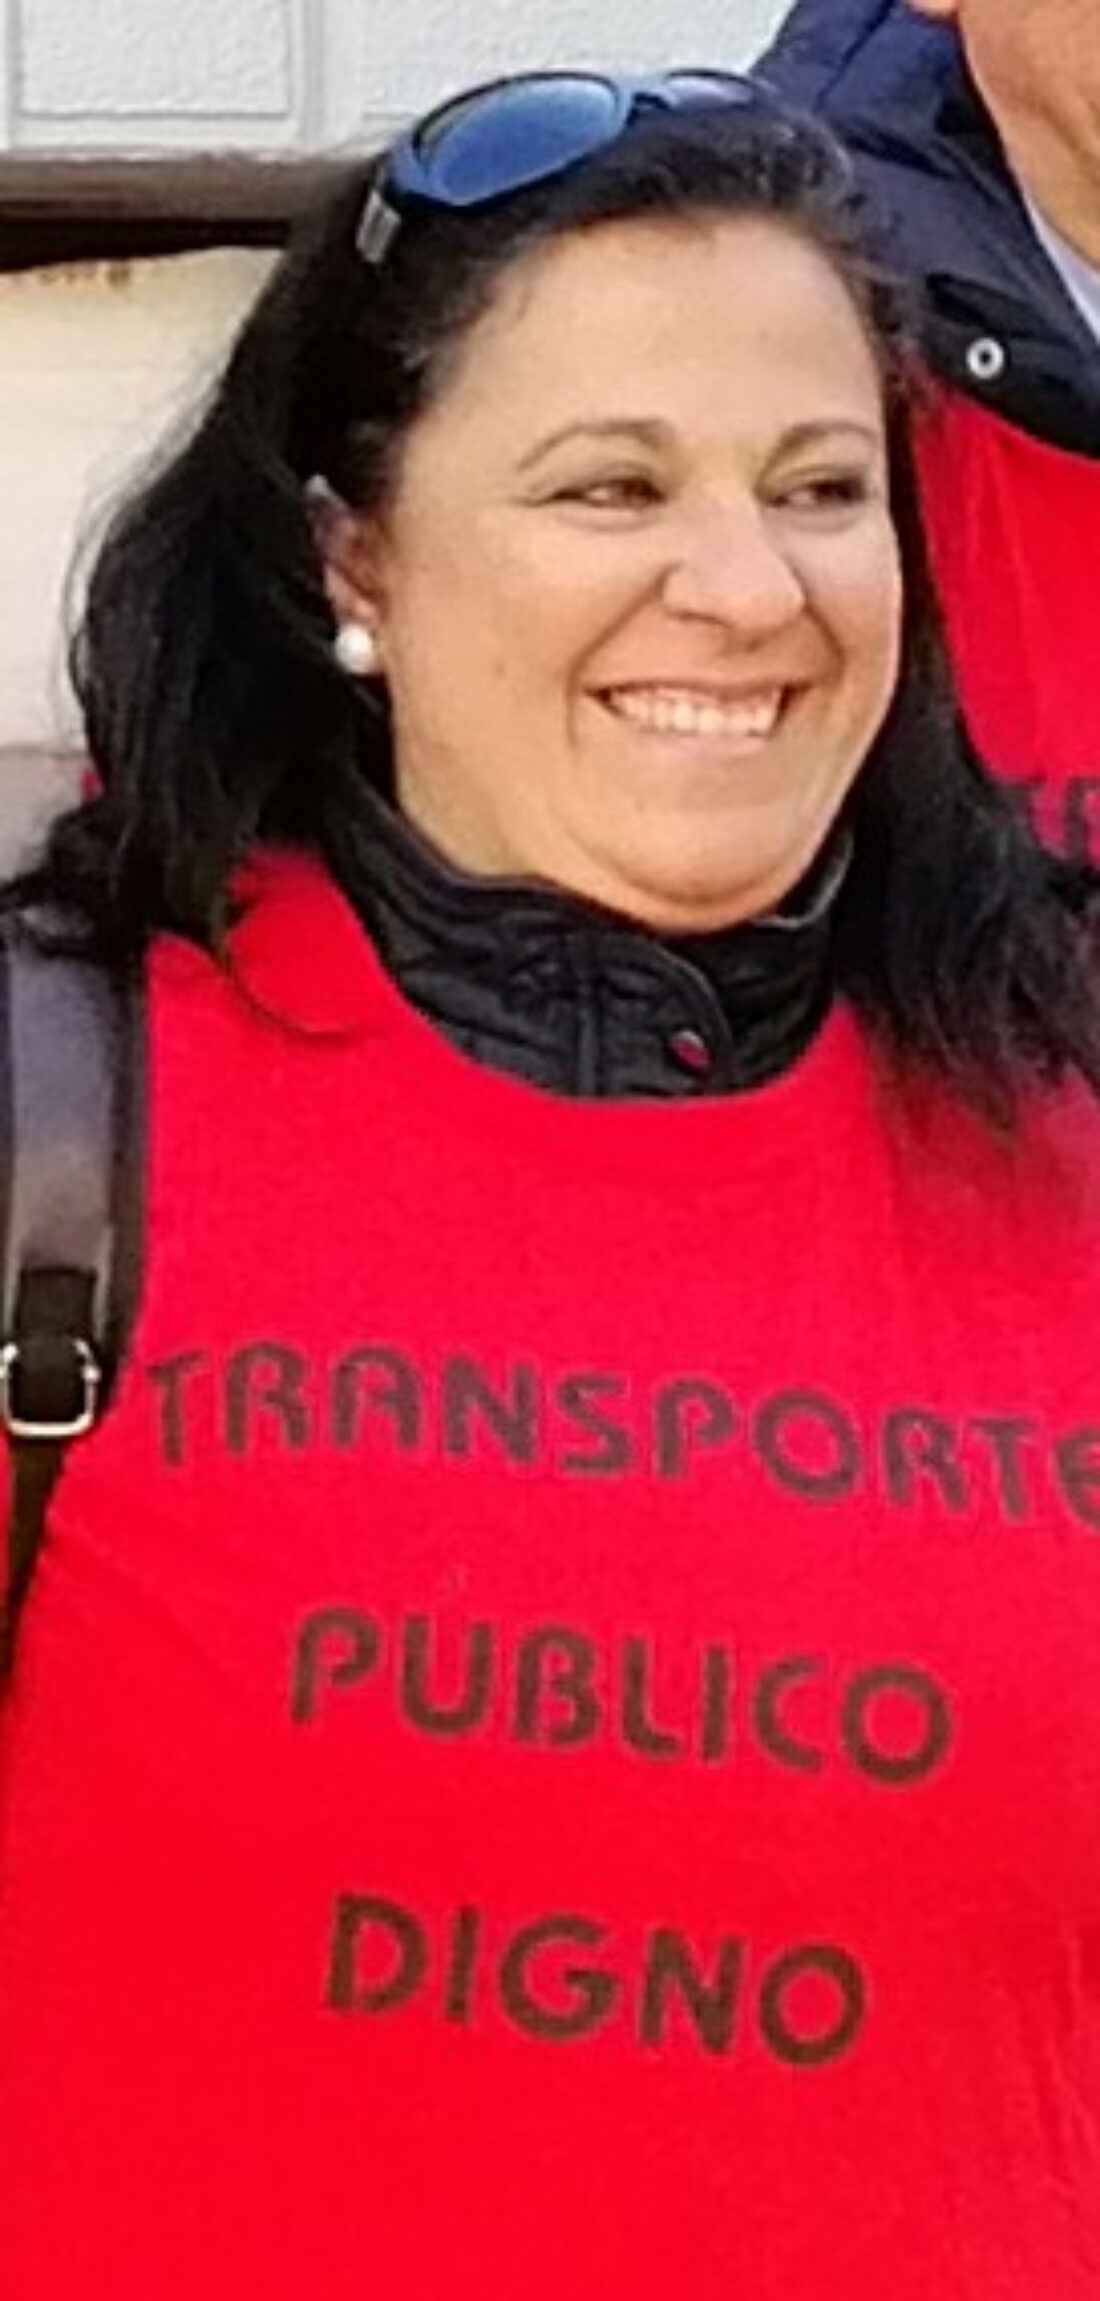 Nos ha dejado Silvia Leyva Pérez, secretaria de la Federación Provincial de la CGT de Granada